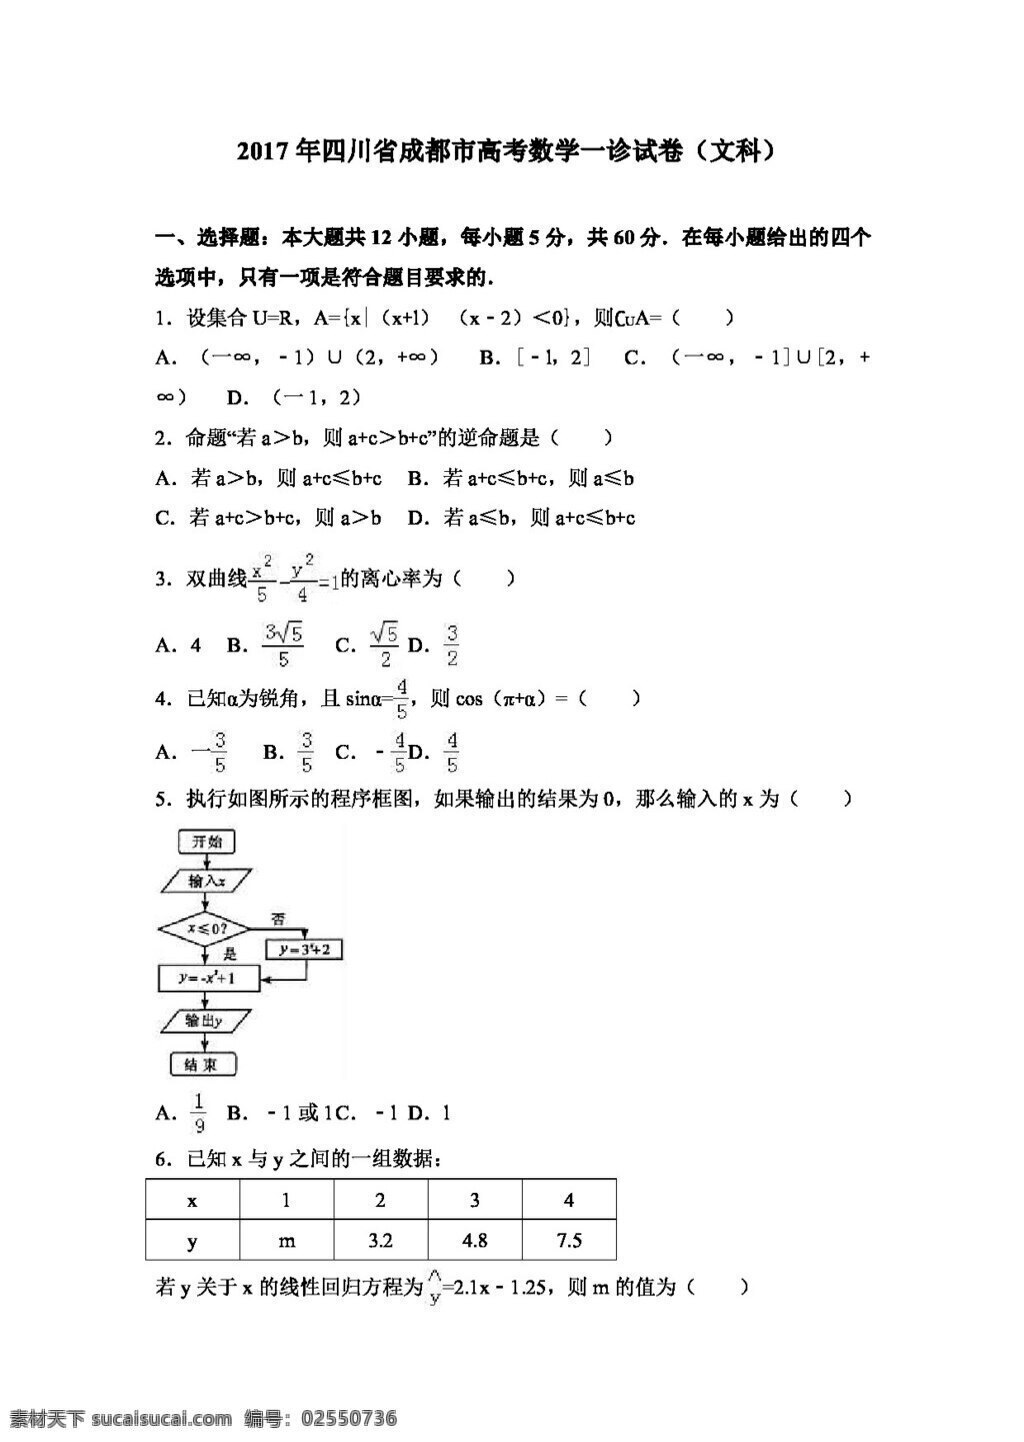 数学 人教 版 2017 年 四川省 成都市 高考 诊 试卷 文科 高考专区 人教版